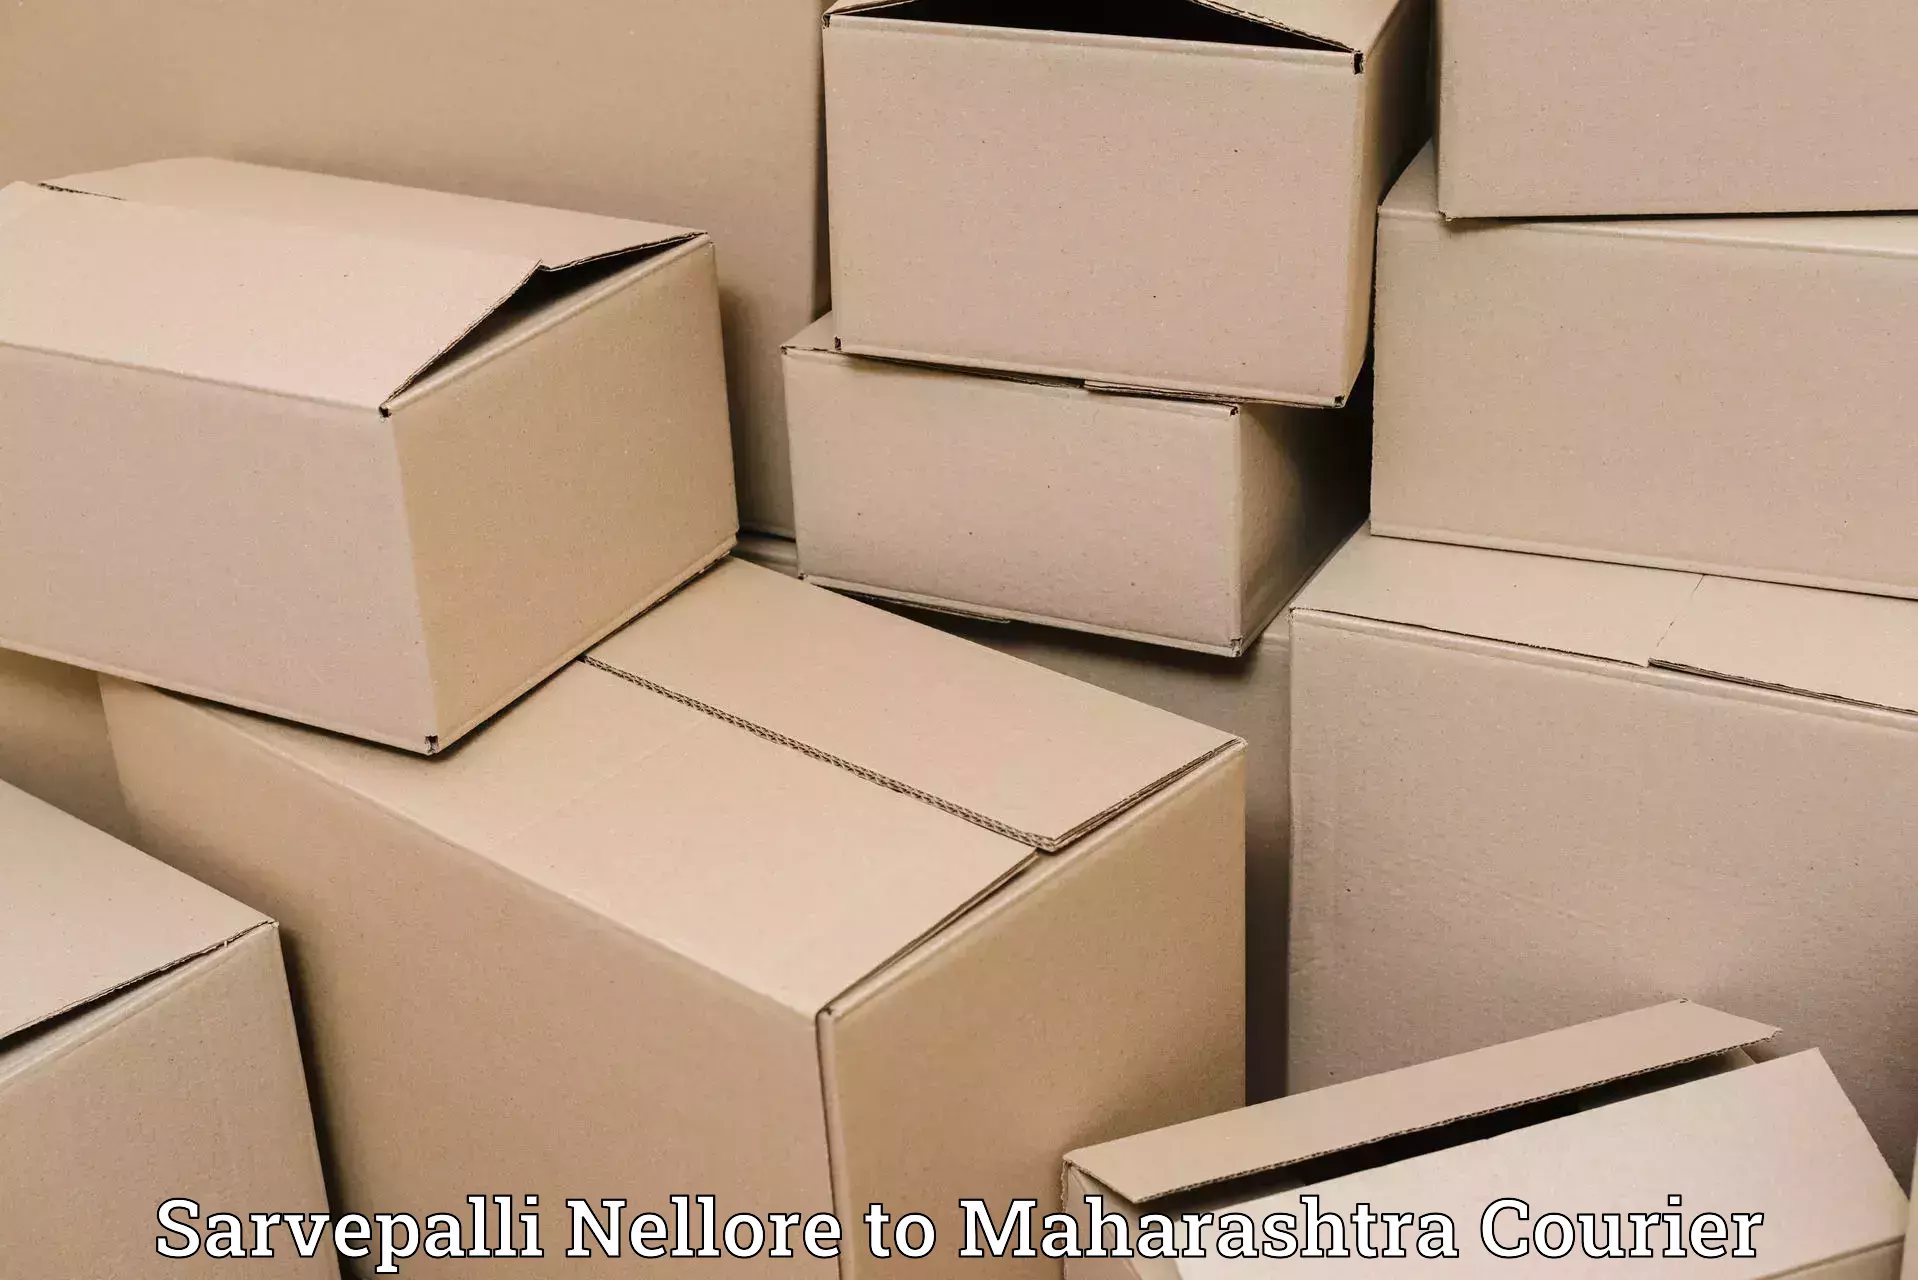 Baggage shipping logistics in Sarvepalli Nellore to Maharashtra